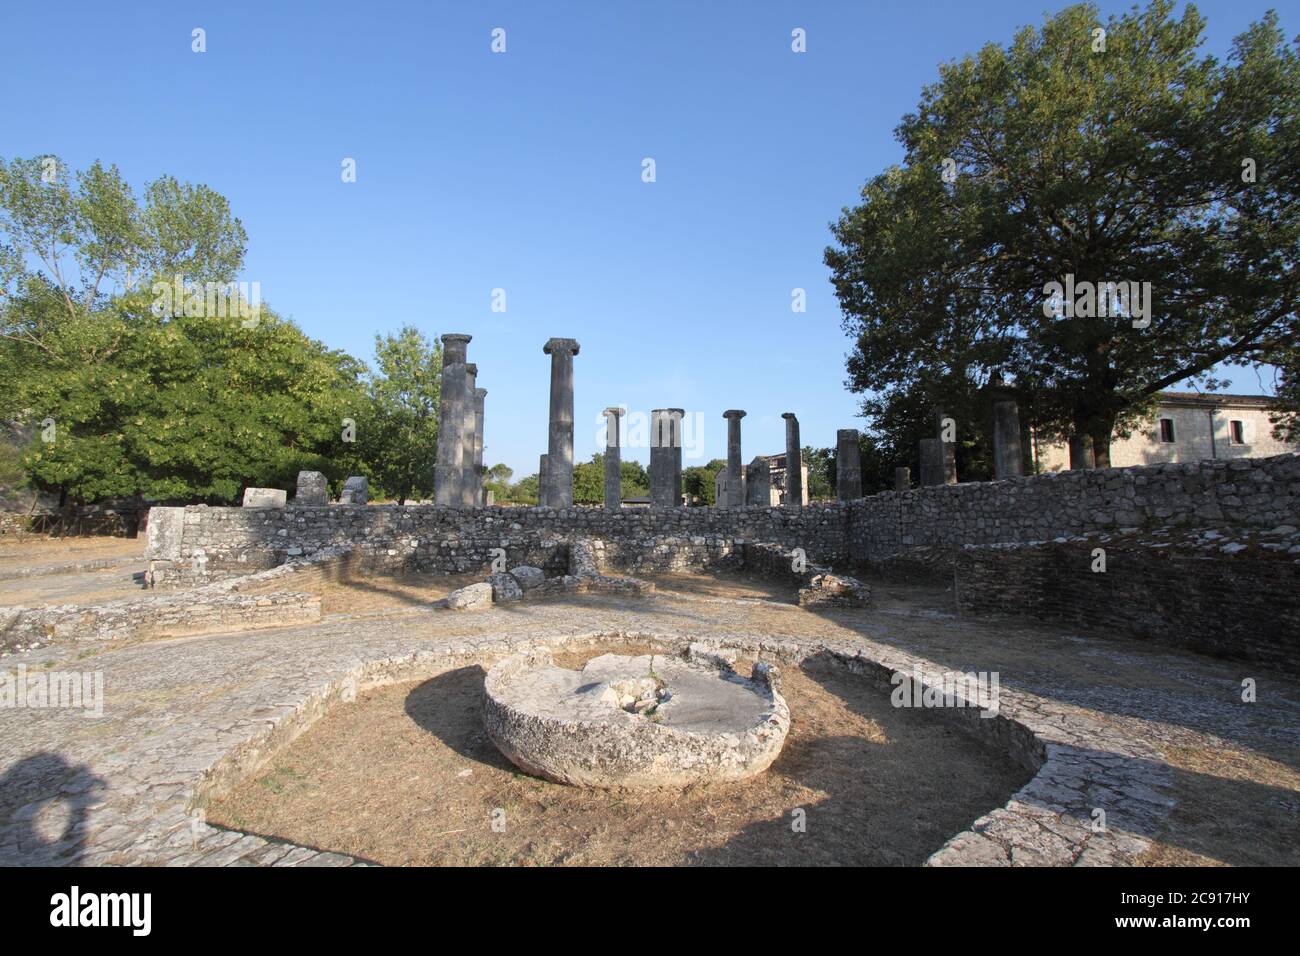 Sepino, Italia - 19 agosto 2017: Gli scavi archeologici di Saepinum nell'area archeologica di Altilia Foto Stock